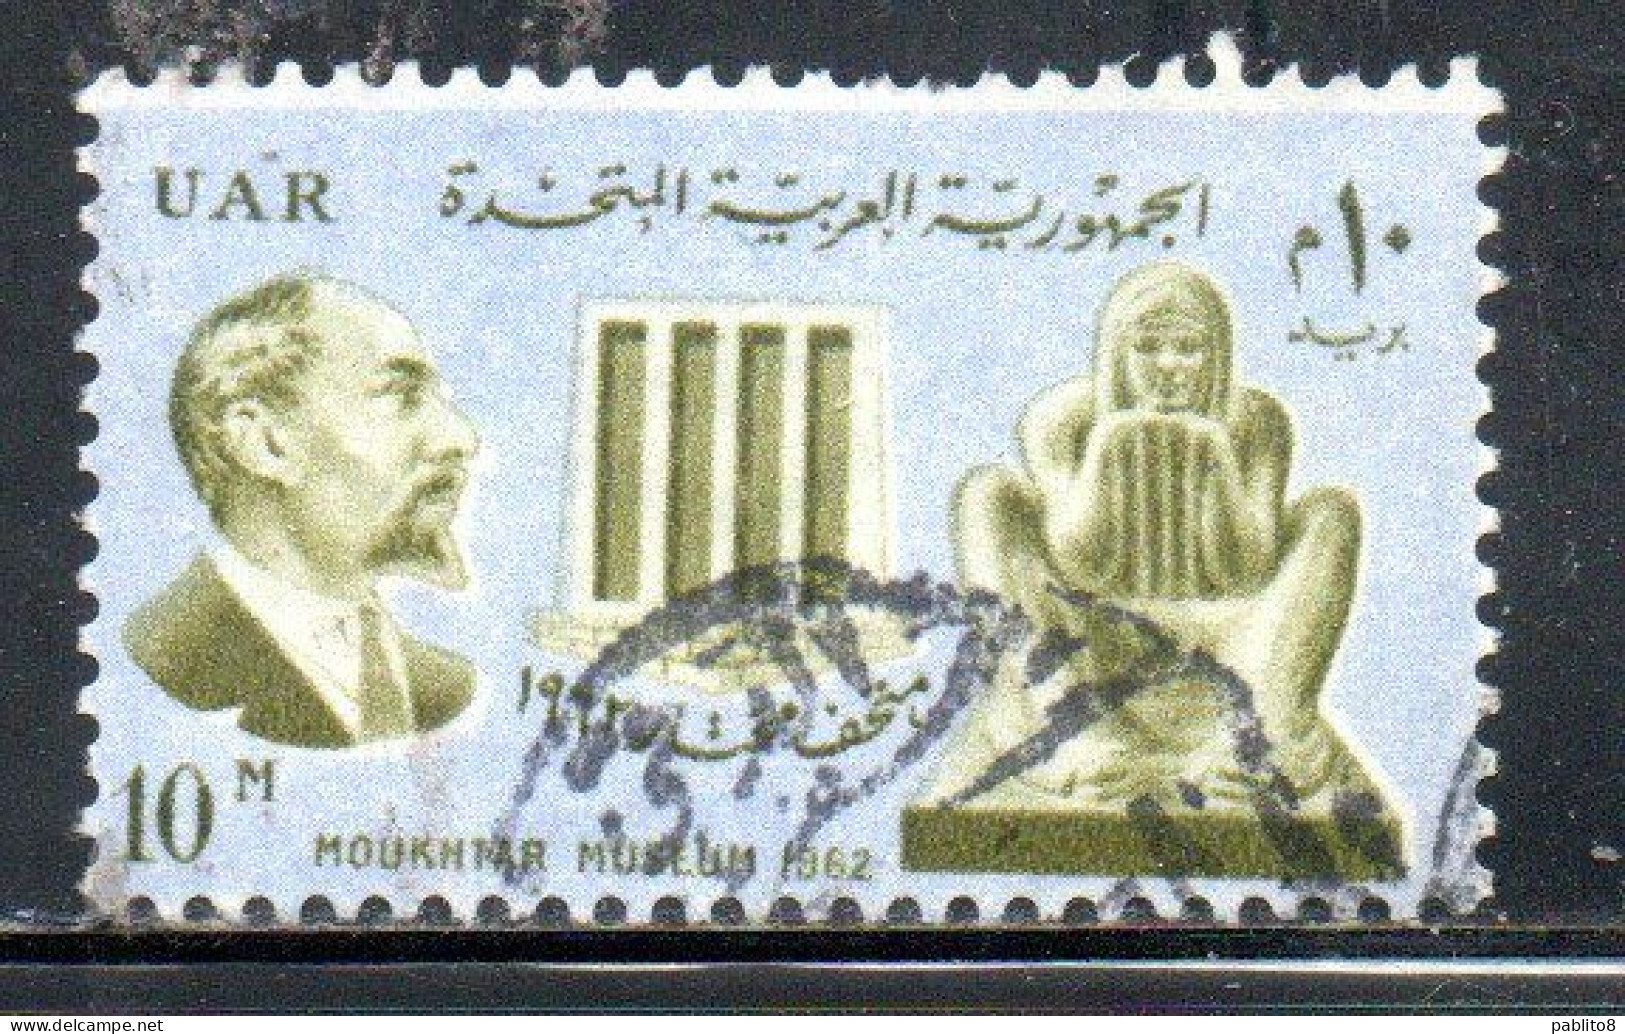 UAR EGYPT EGITTO 1962 MAHMOUD MOUKHTAR MUSEUM SCULPTURE LA VESTALE DE SECRETS 10m USED USATO OBLITERE' - Gebraucht